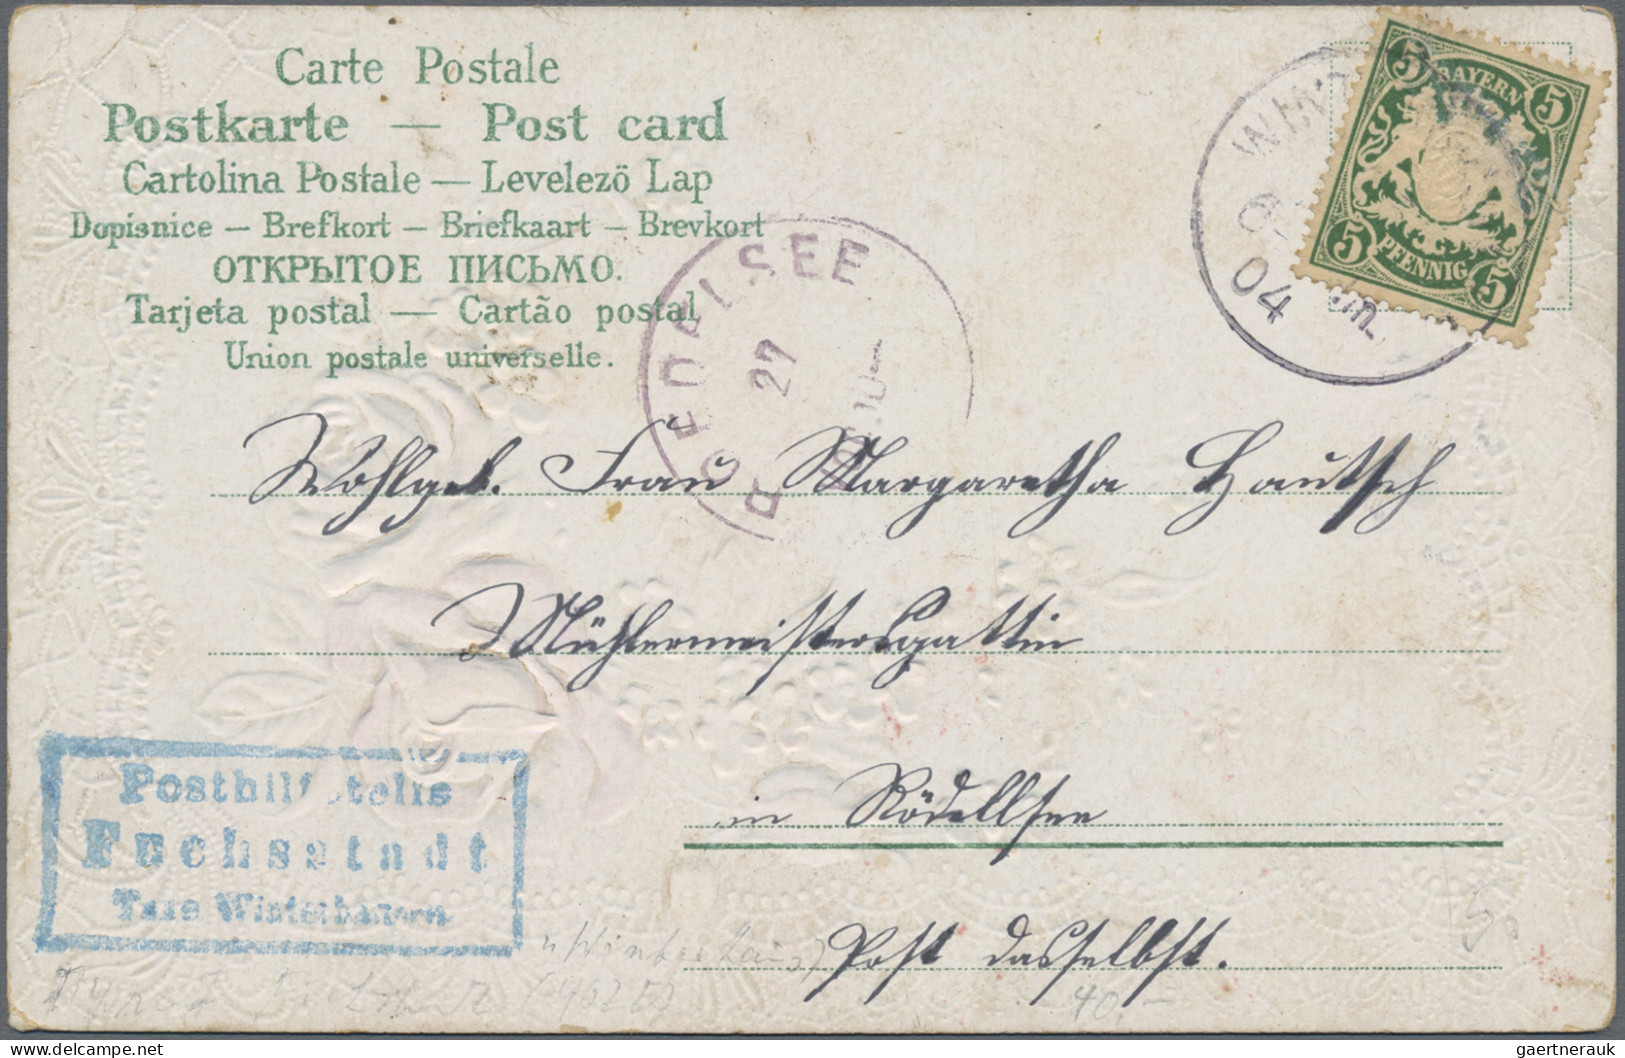 Bayern - Postablagestempel: 1900/1919, POSTHILFSSTELLENSTEMPEL, umfangreiche Sam